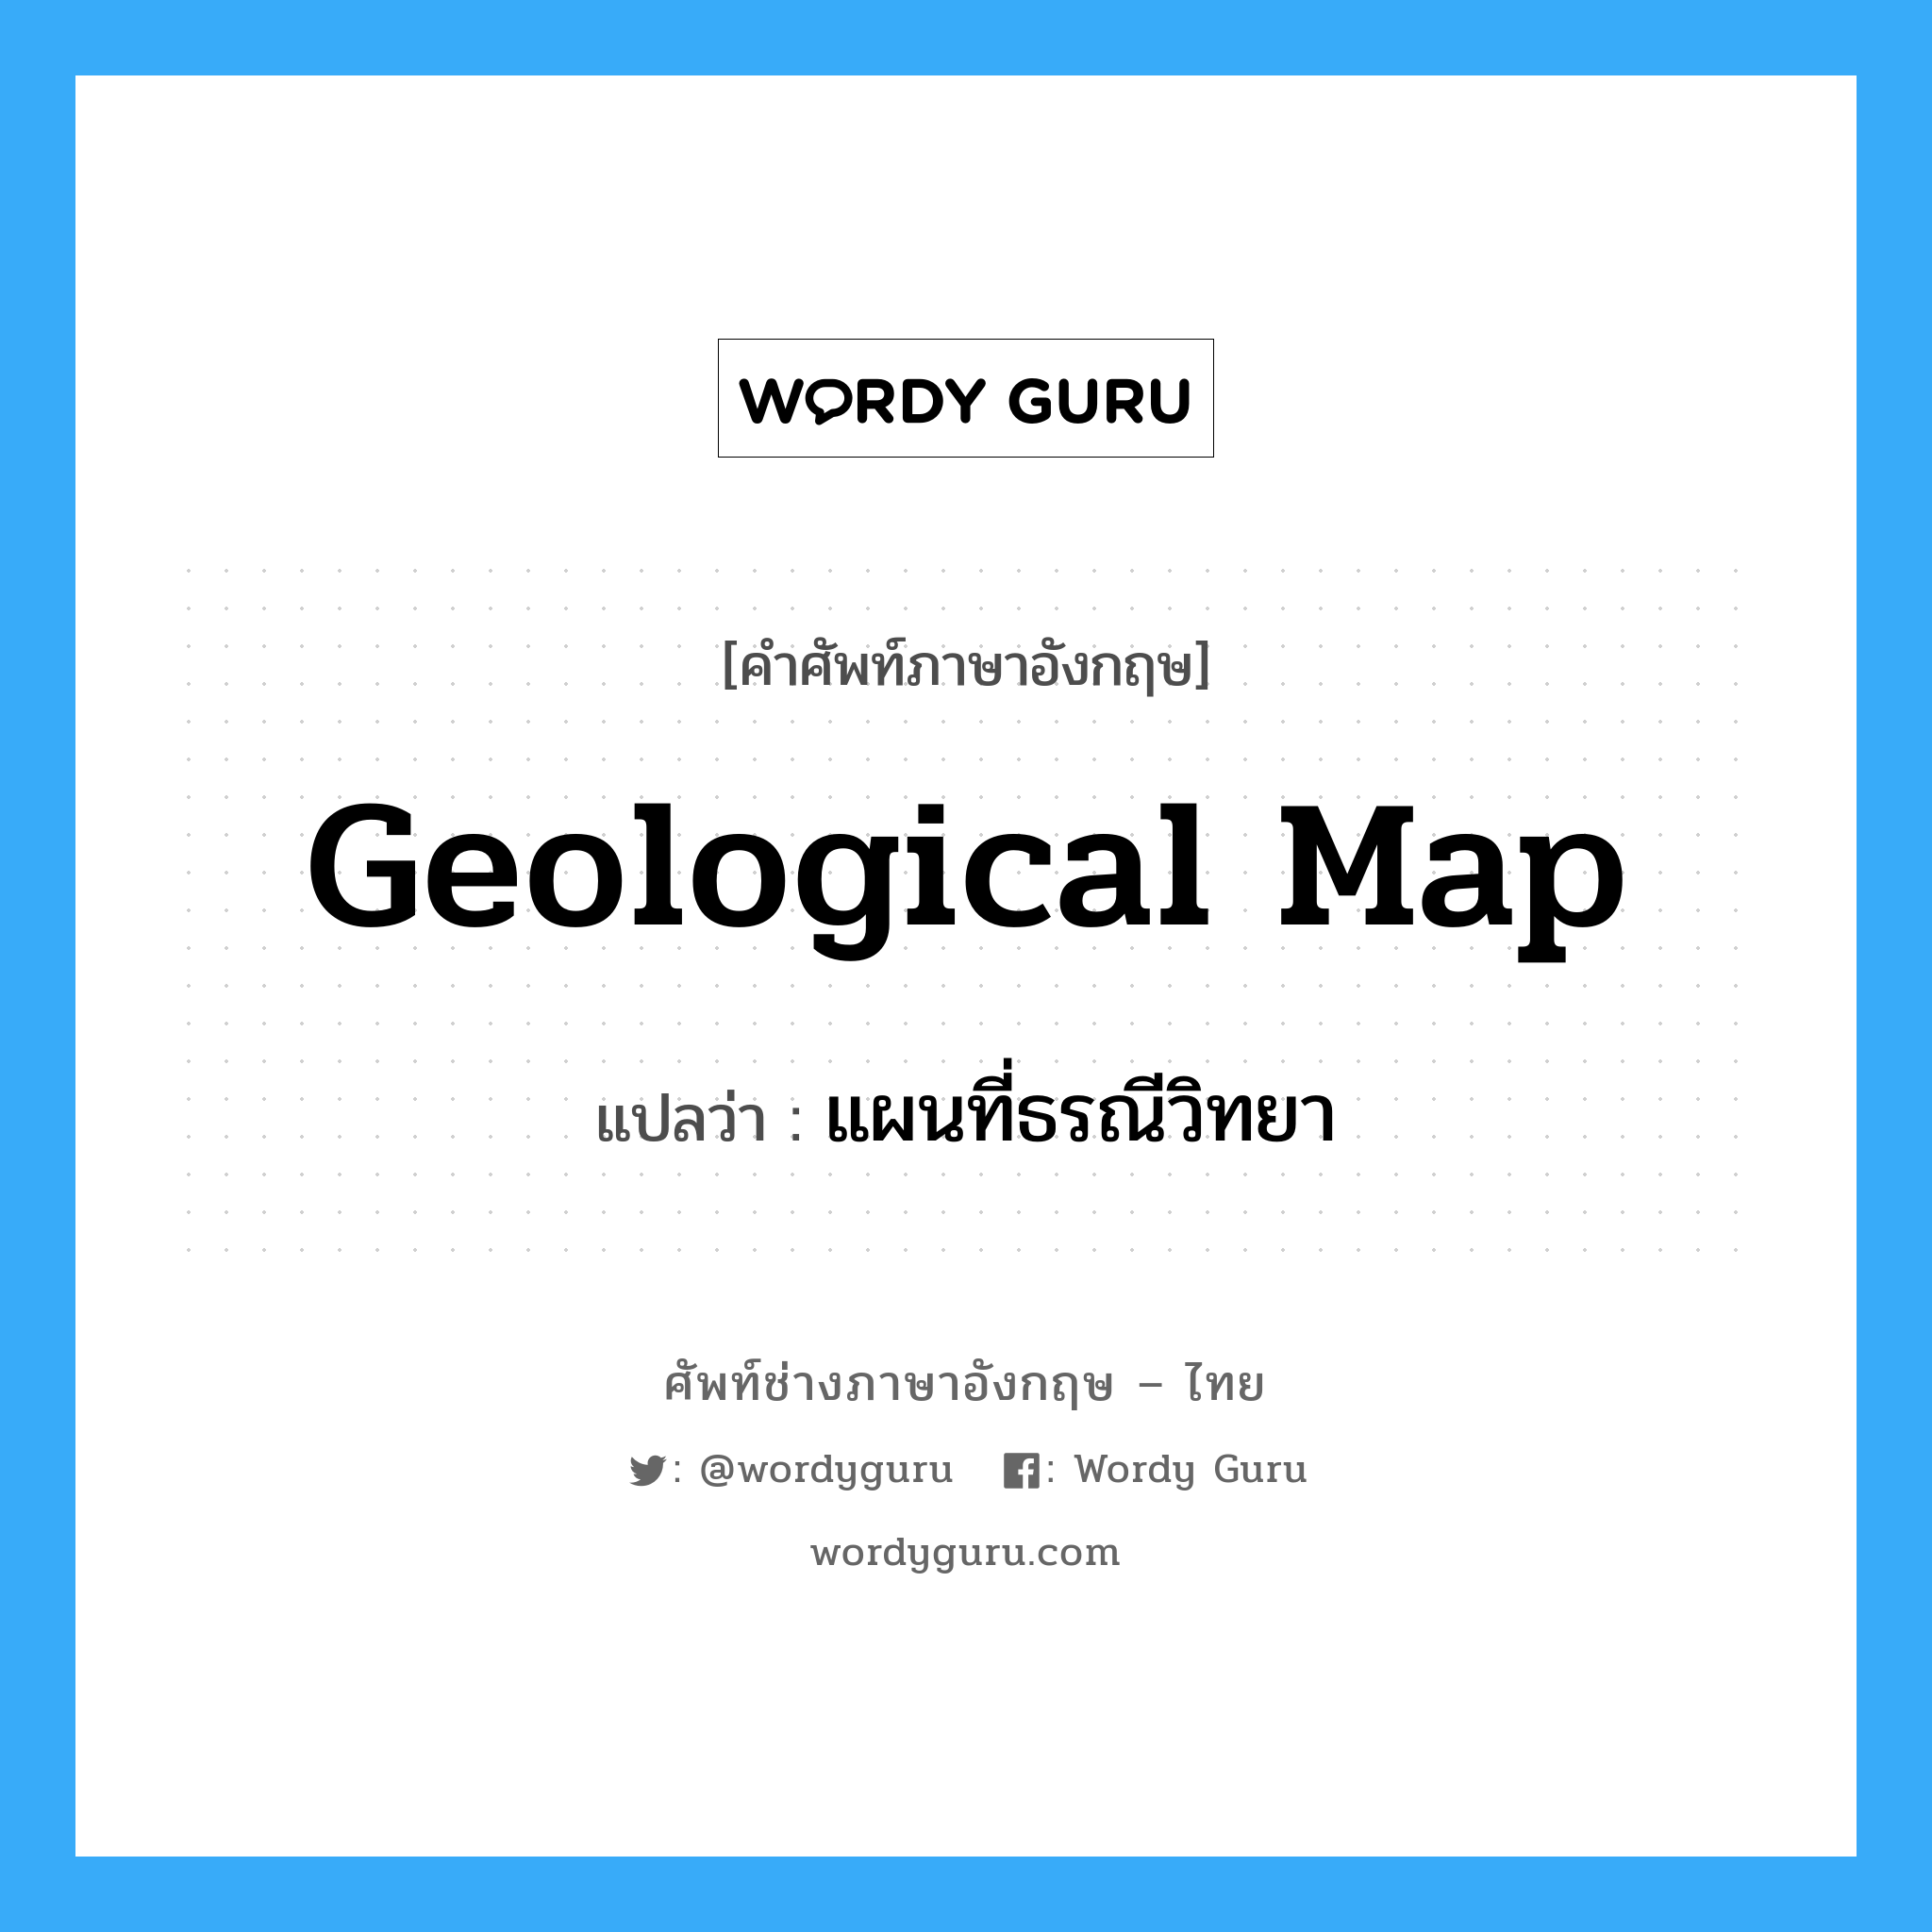 แผนที่ธรณีวิทยา ภาษาอังกฤษ?, คำศัพท์ช่างภาษาอังกฤษ - ไทย แผนที่ธรณีวิทยา คำศัพท์ภาษาอังกฤษ แผนที่ธรณีวิทยา แปลว่า geological map